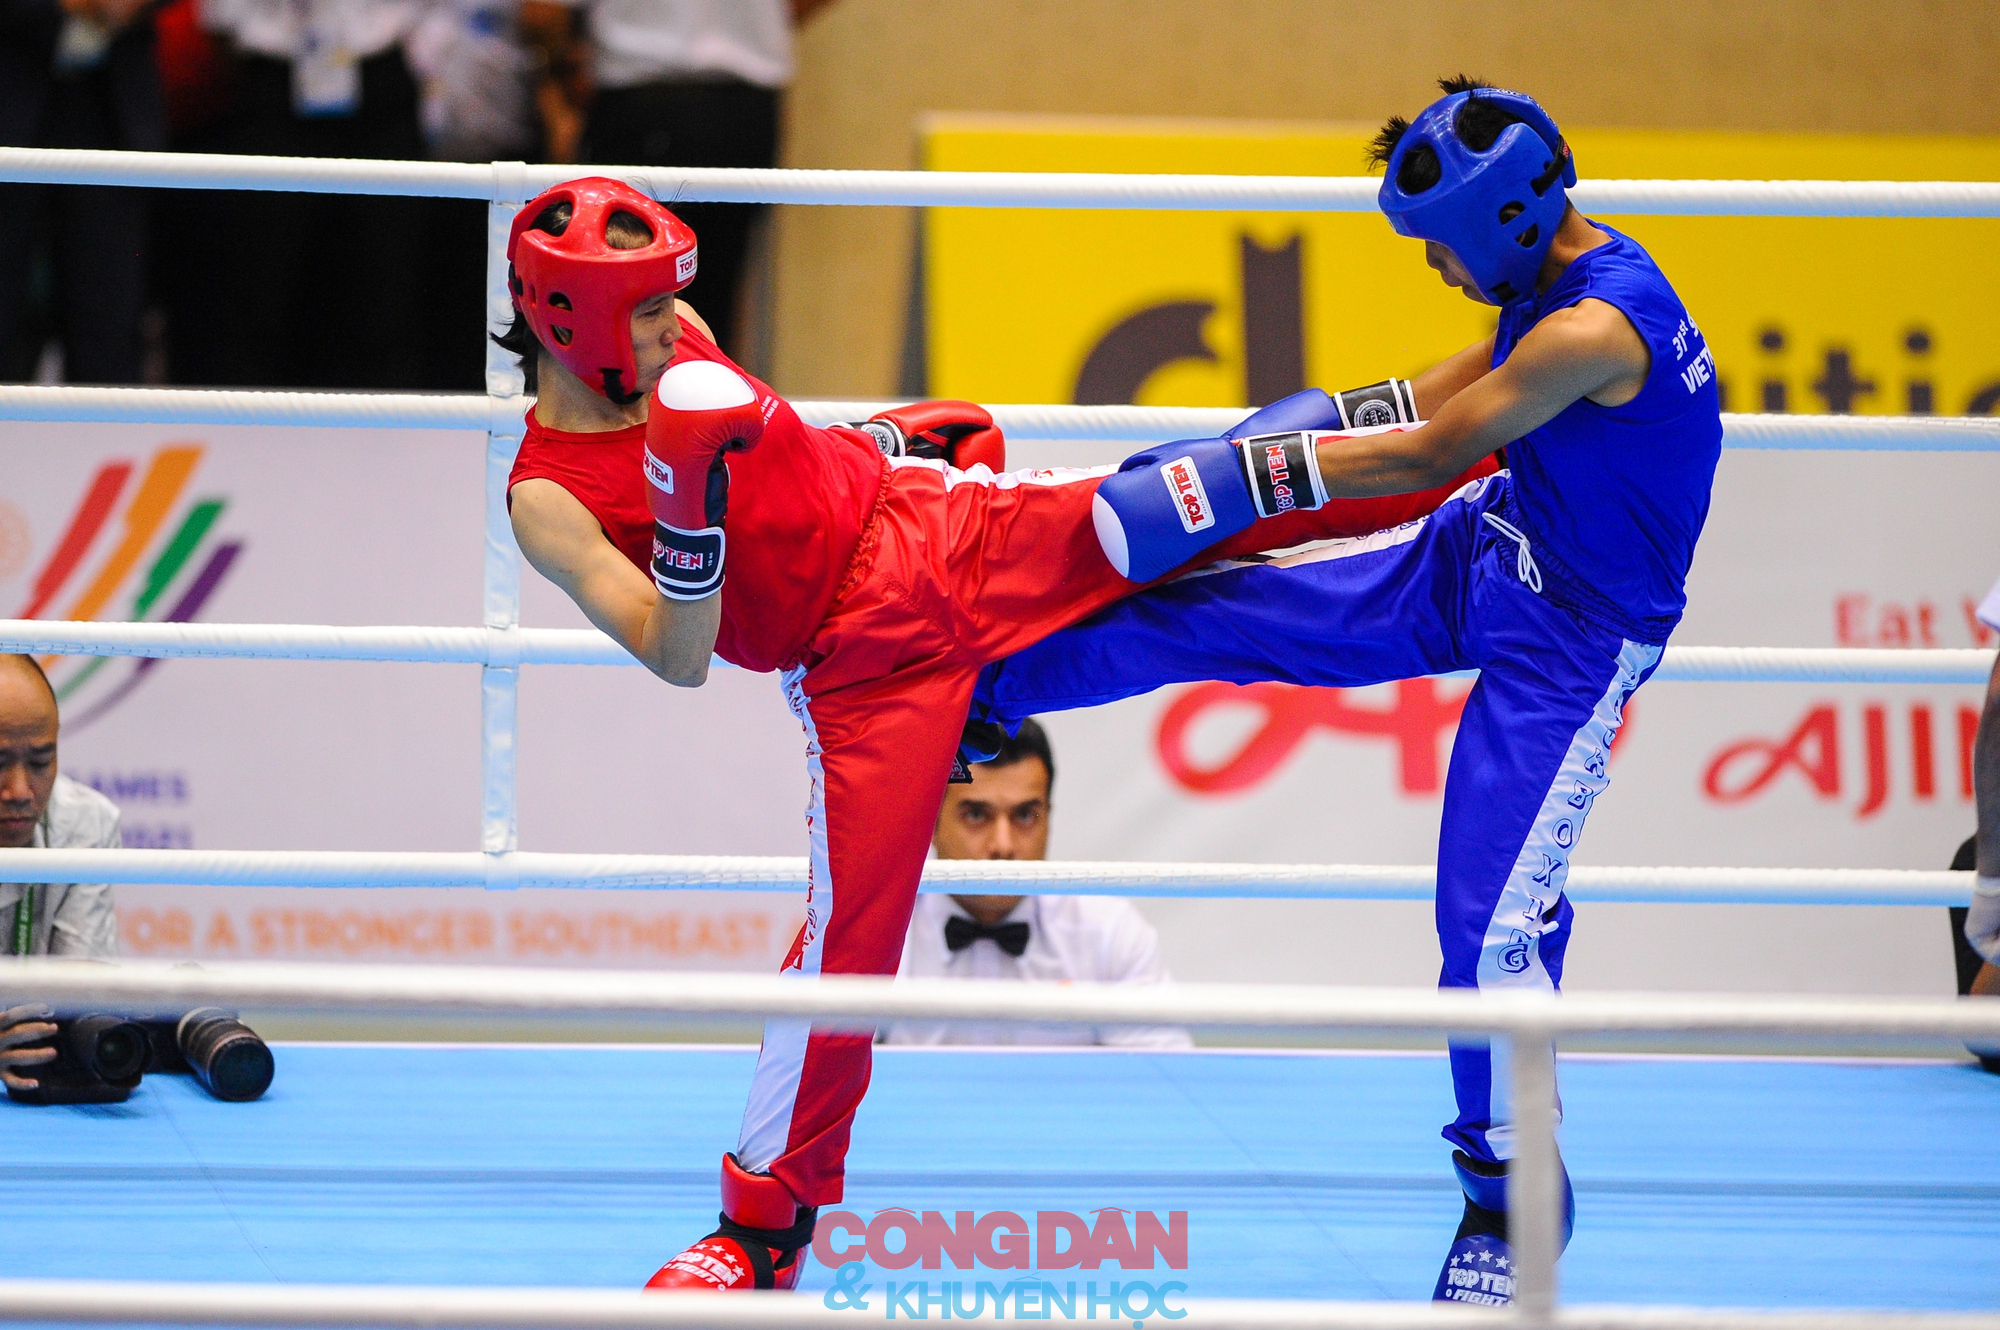 Hình ảnh: kịch tính tuyển kickboxing Việt Nam giành 5 HCV trong đêm chung kết  - Ảnh 4.